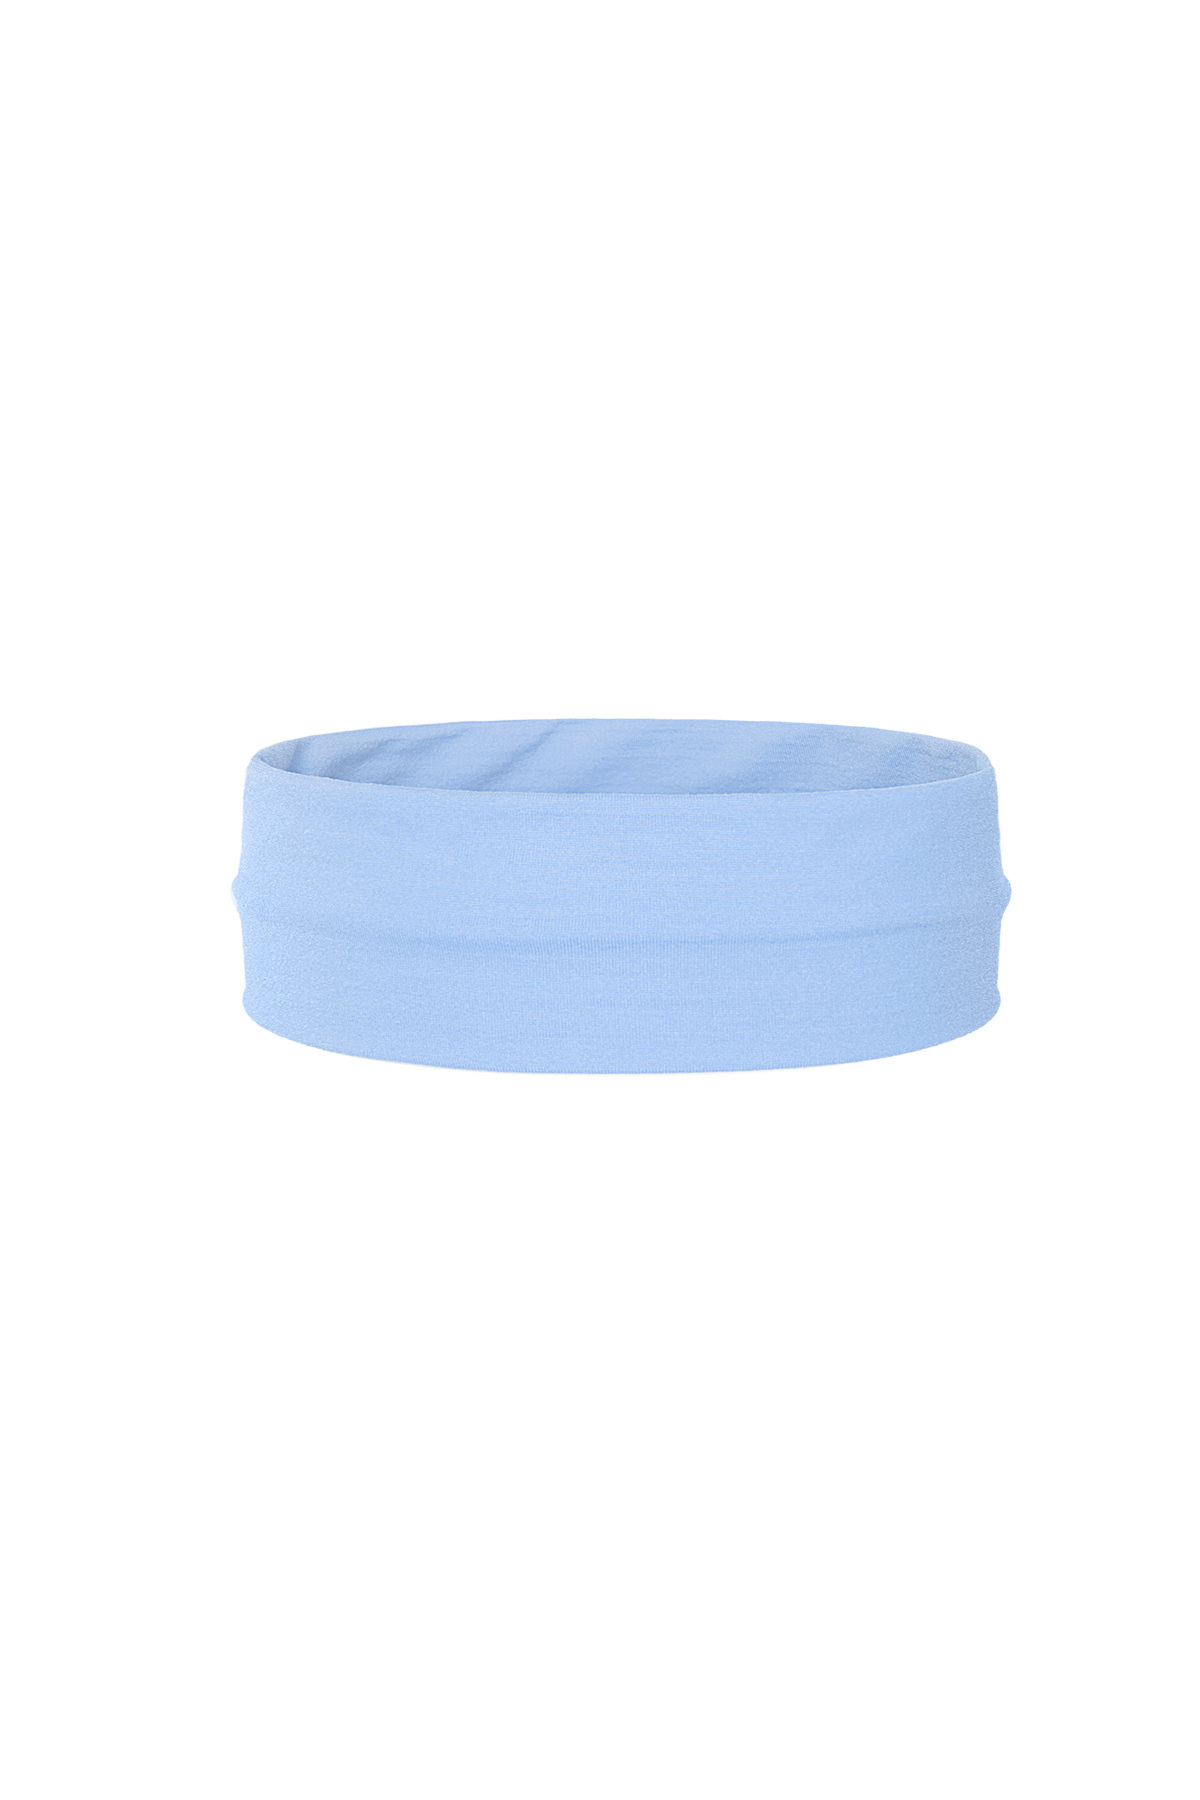 Fascia elastica per capelli basic - blu h5 